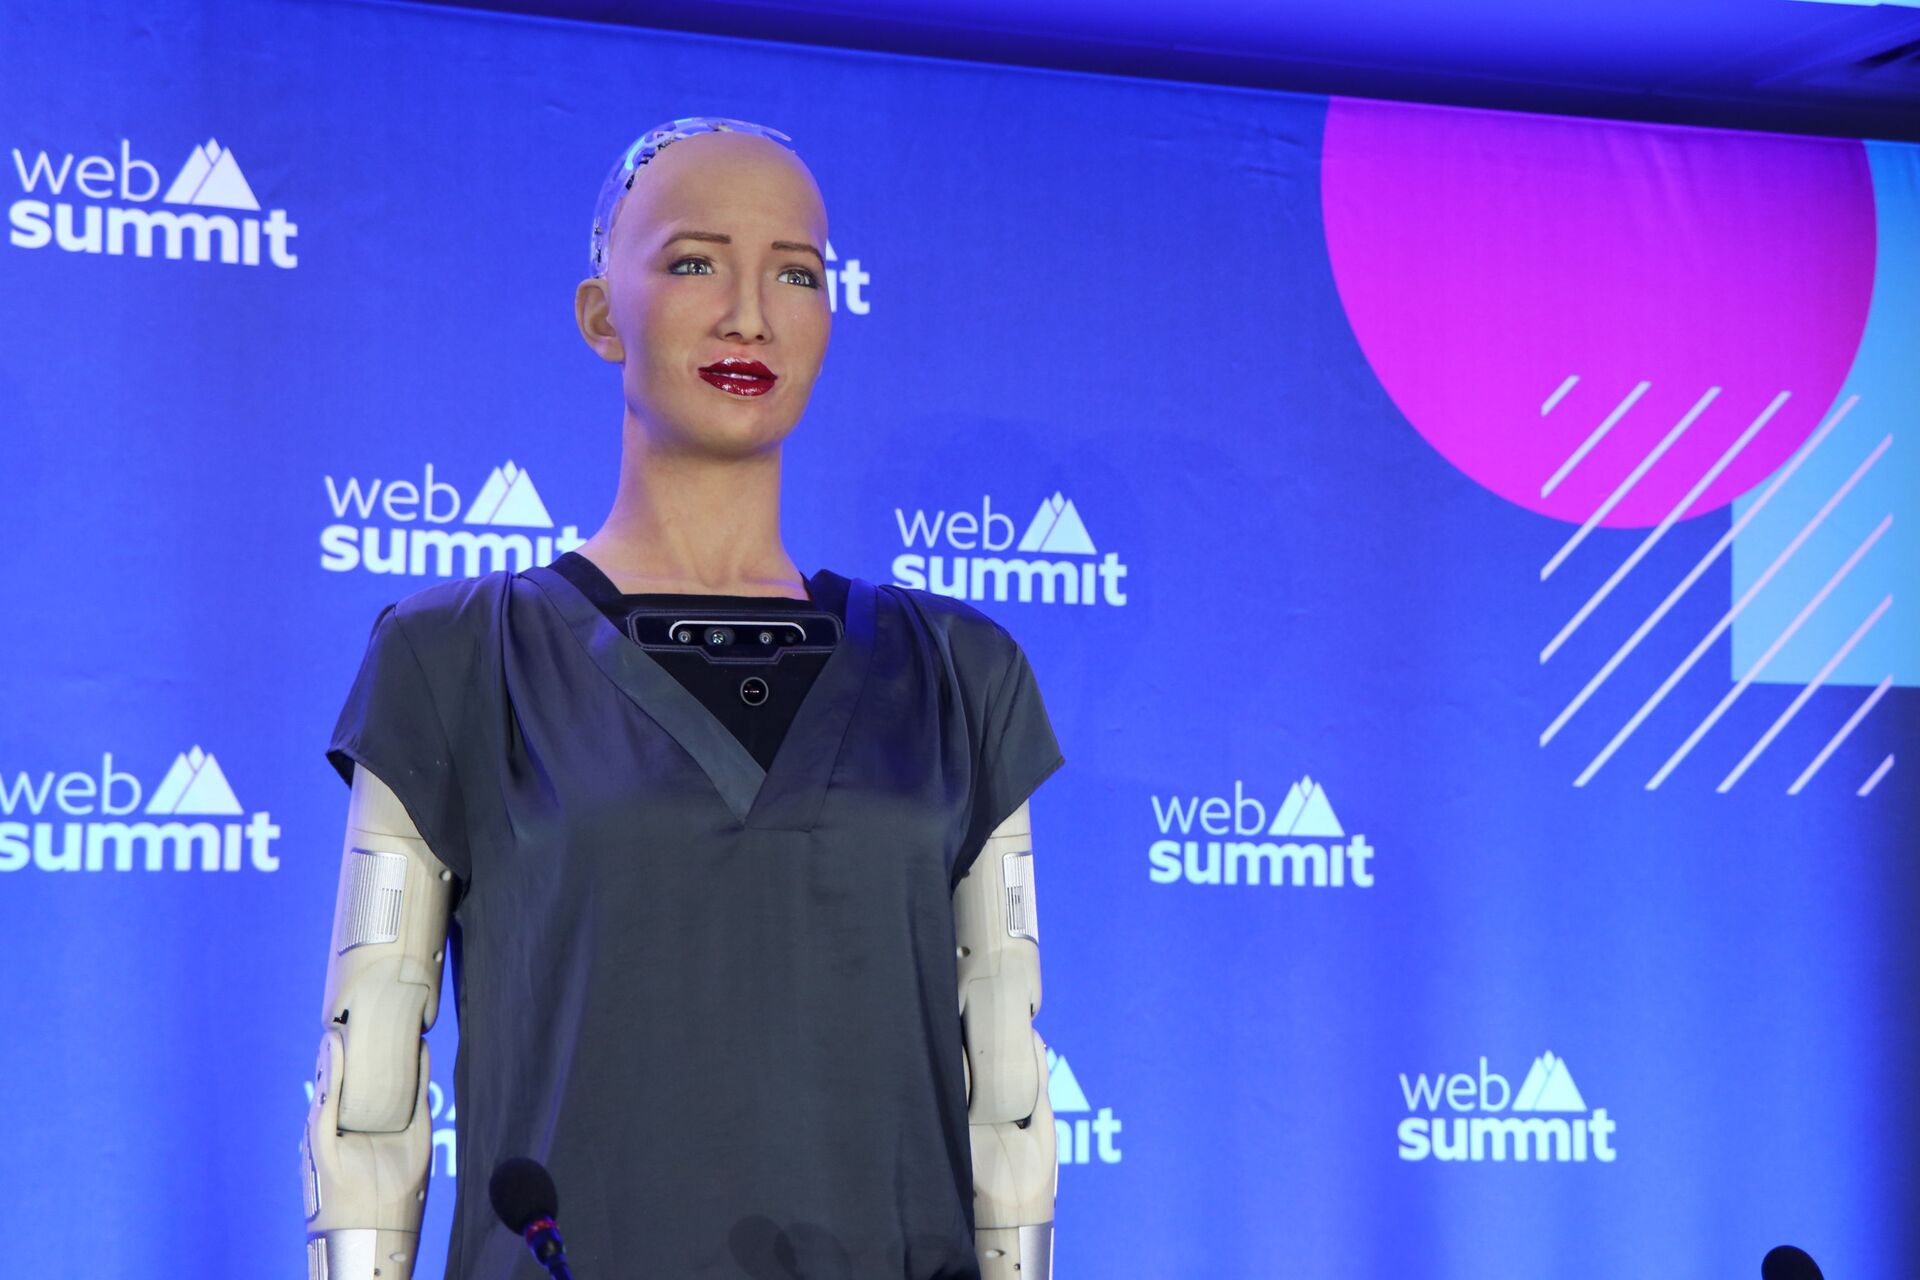 O Brasil é incrível, diz robô Sophia durante coletiva sobre inteligência artificial no Web Summit - Sputnik Brasil, 1920, 09.11.2021